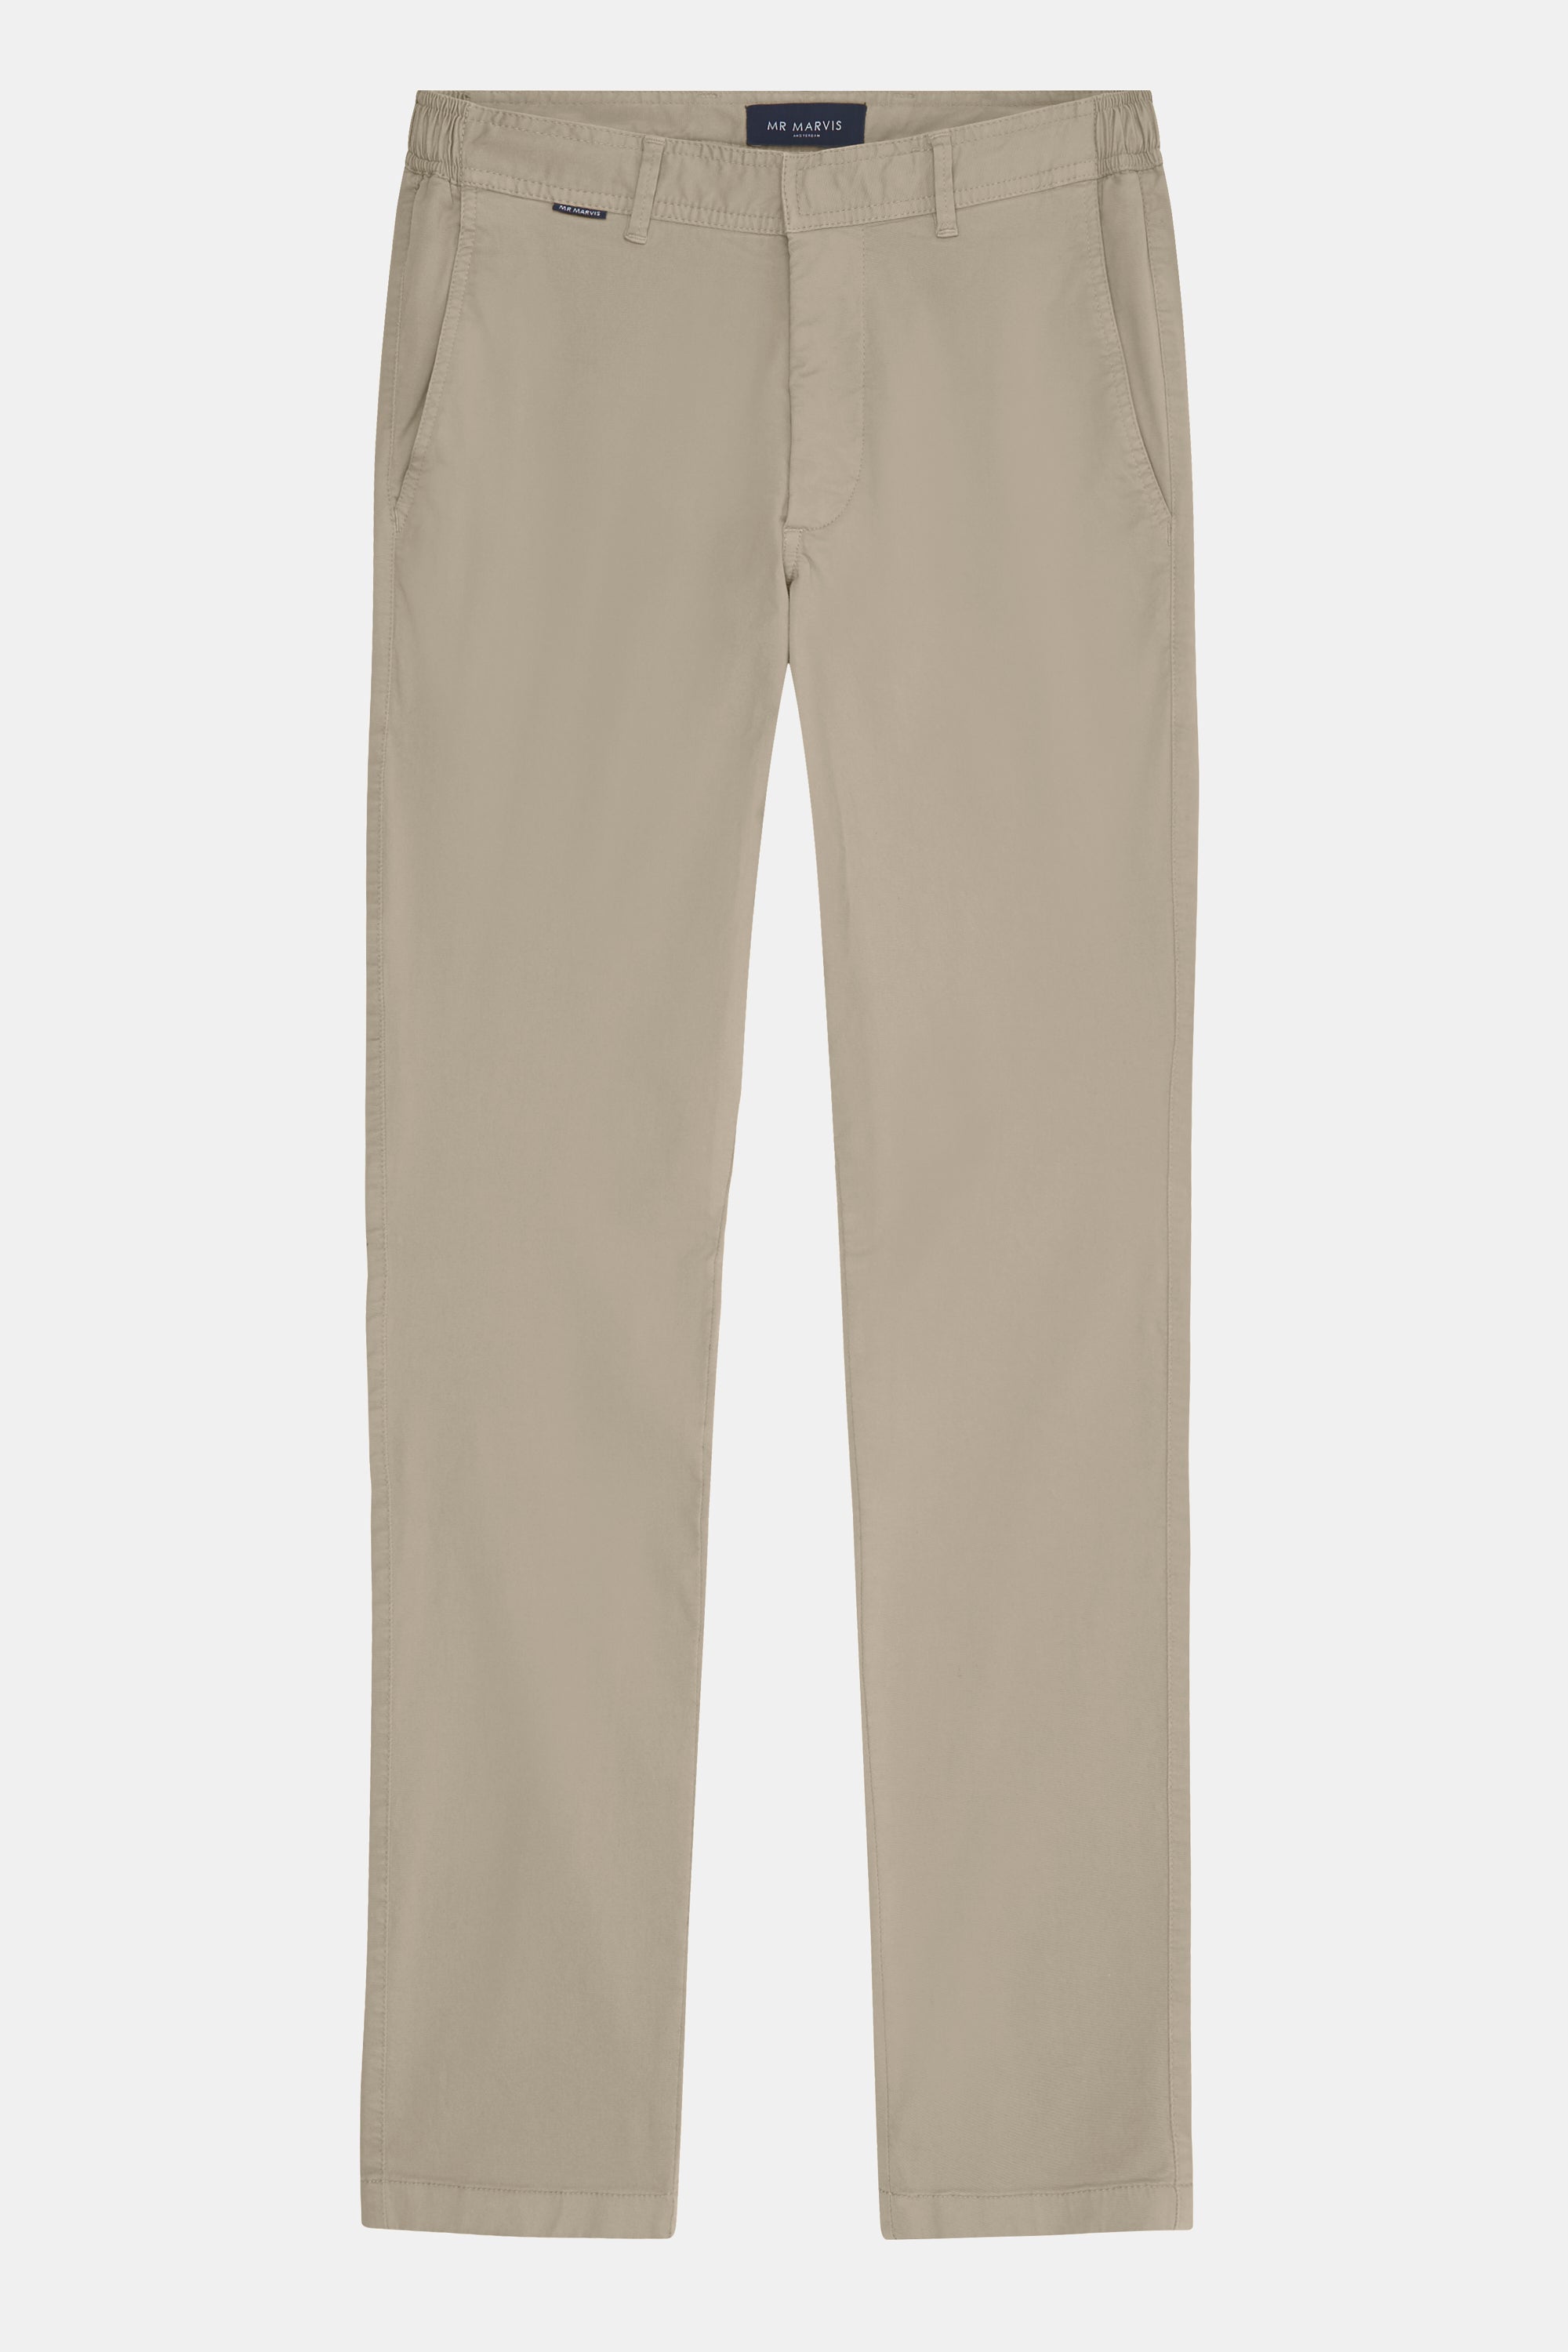 | Pantalones para hombre en color marrón claro | MR MARVIS